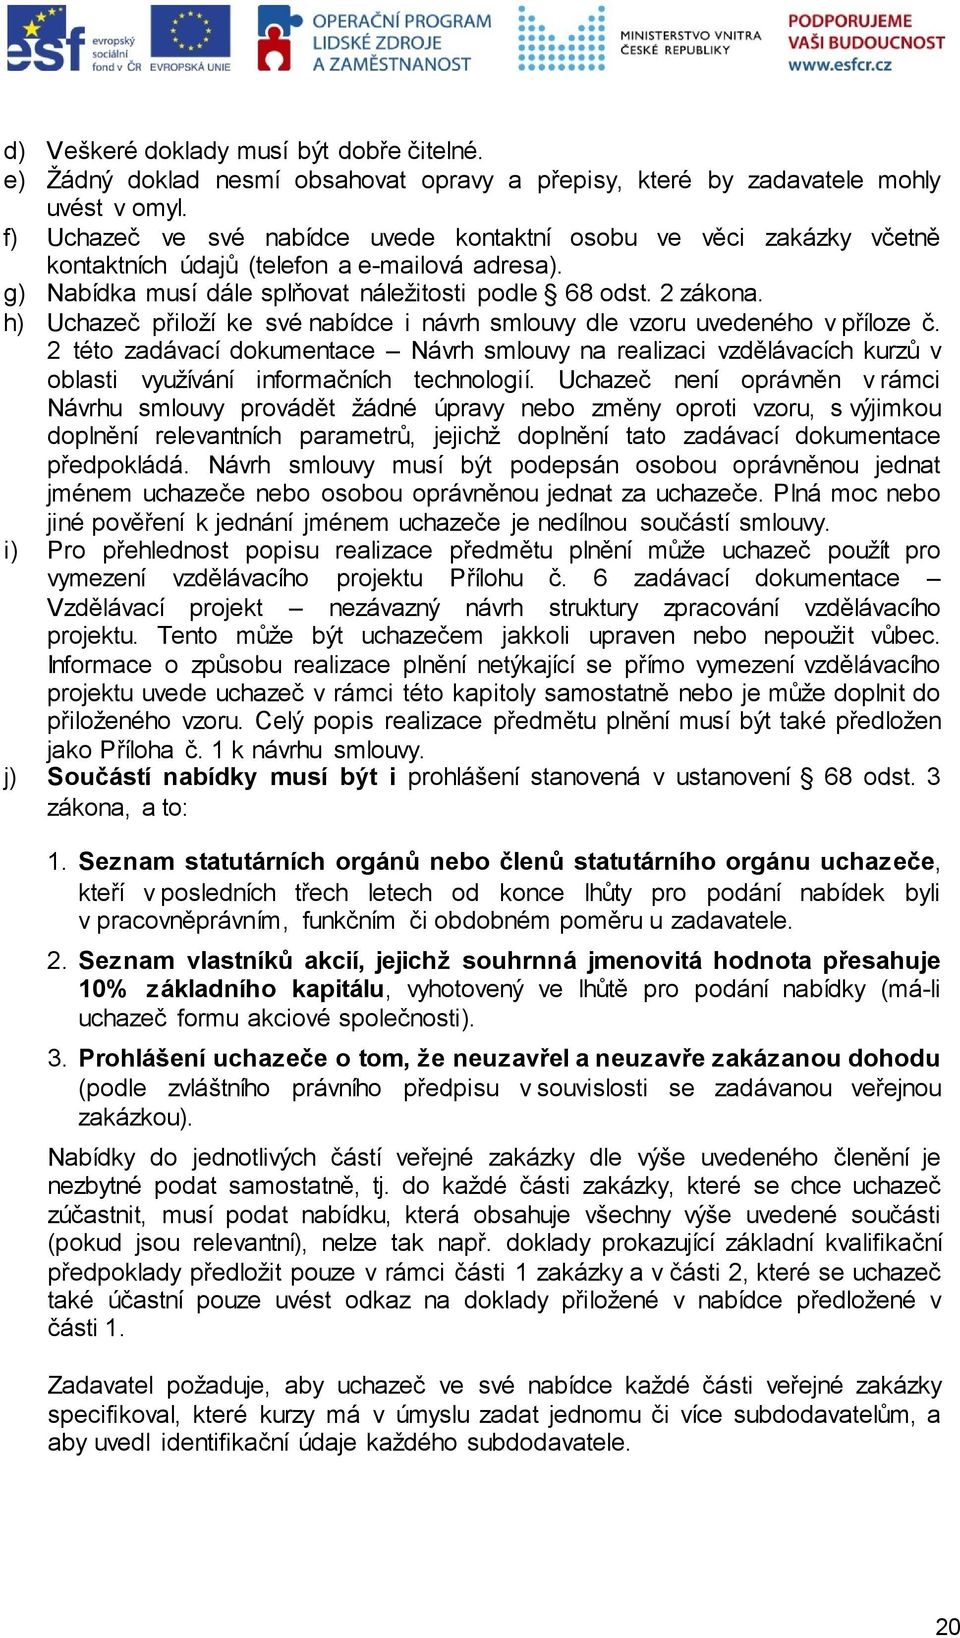 h) Uchazeč přiloží ke své nabídce i návrh smlouvy dle vzoru uvedeného v příloze č.